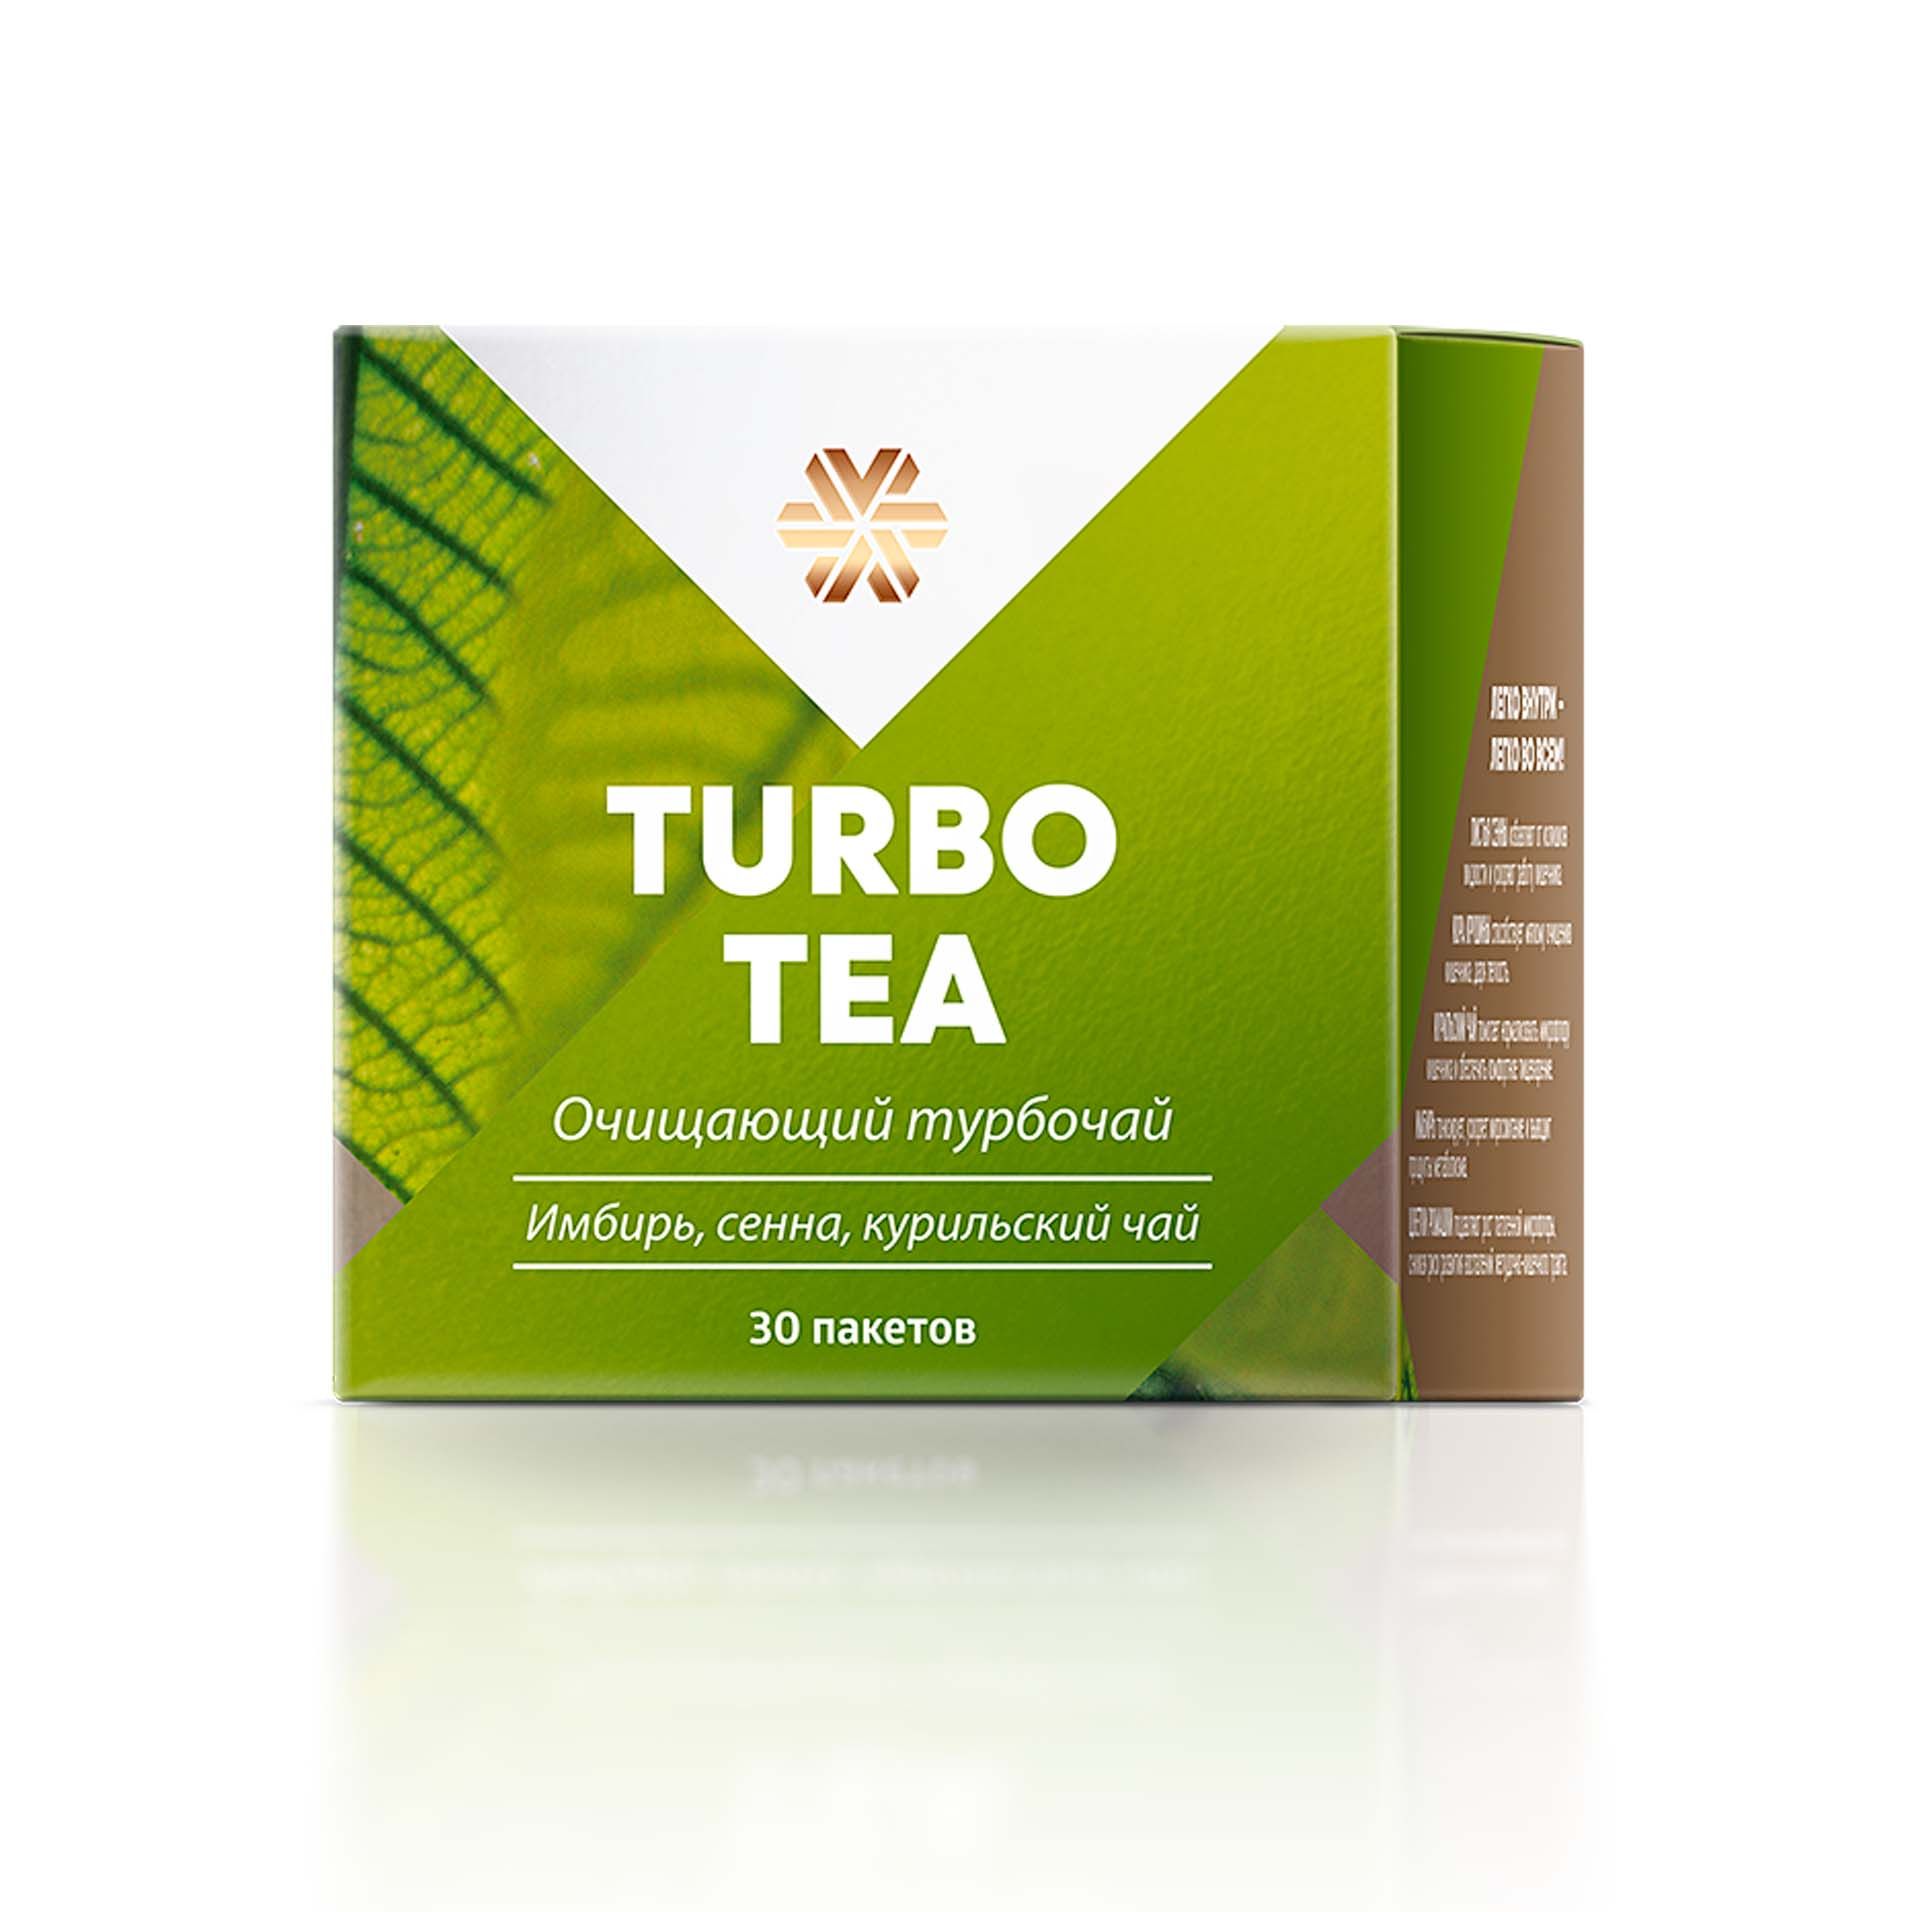 Истоки чистоты - Turbo Tea (Очищающий турбочай)